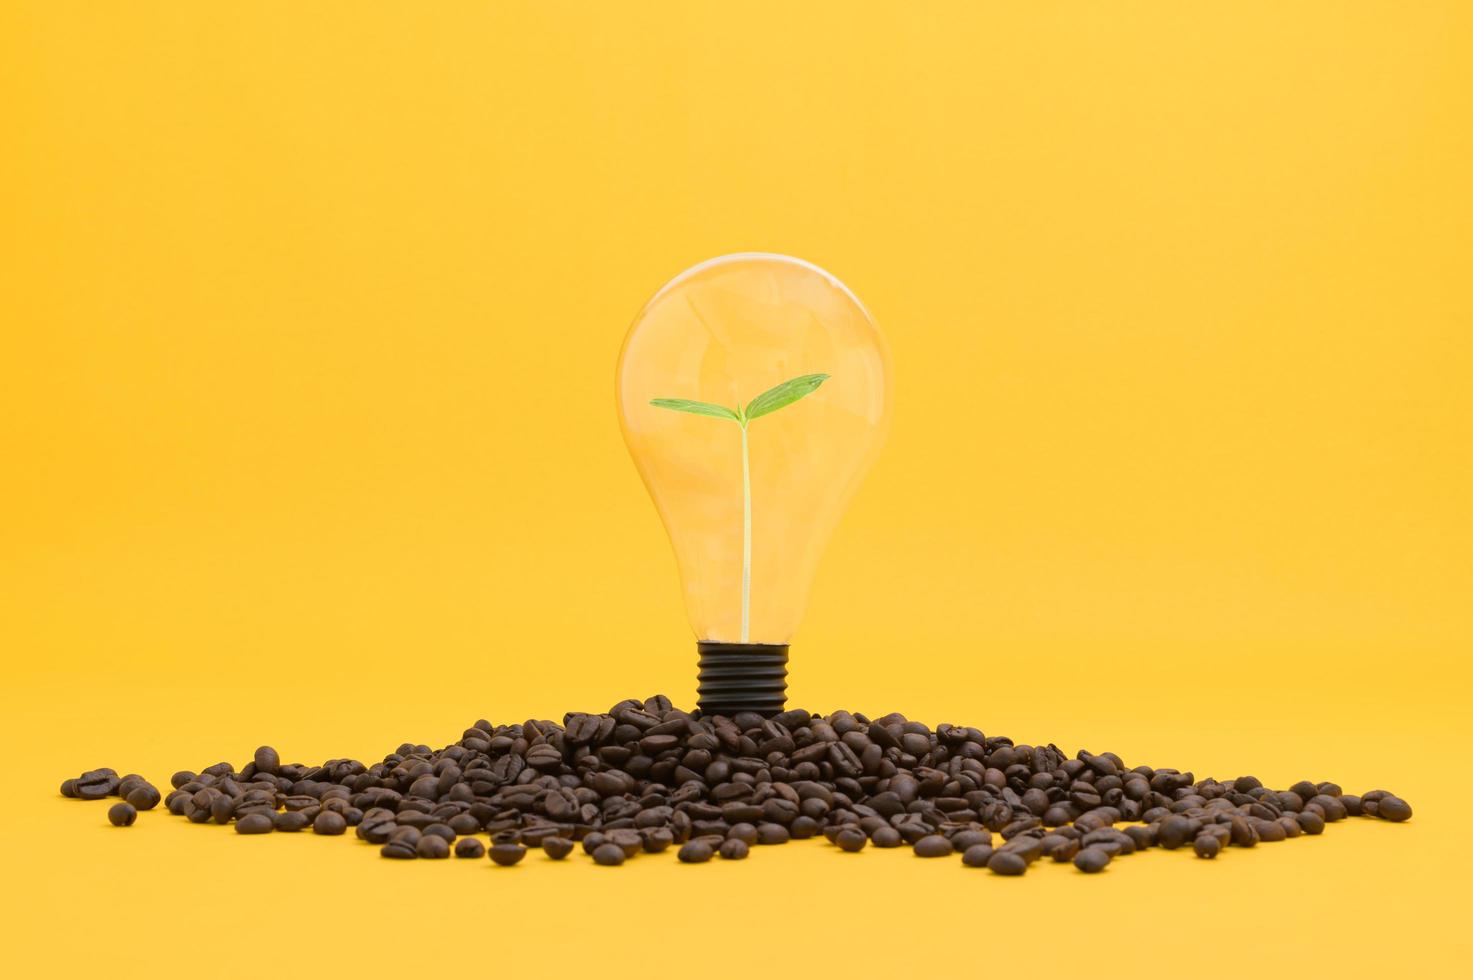 koffie drinken voor energie nieuwe ideeën opdoen foto